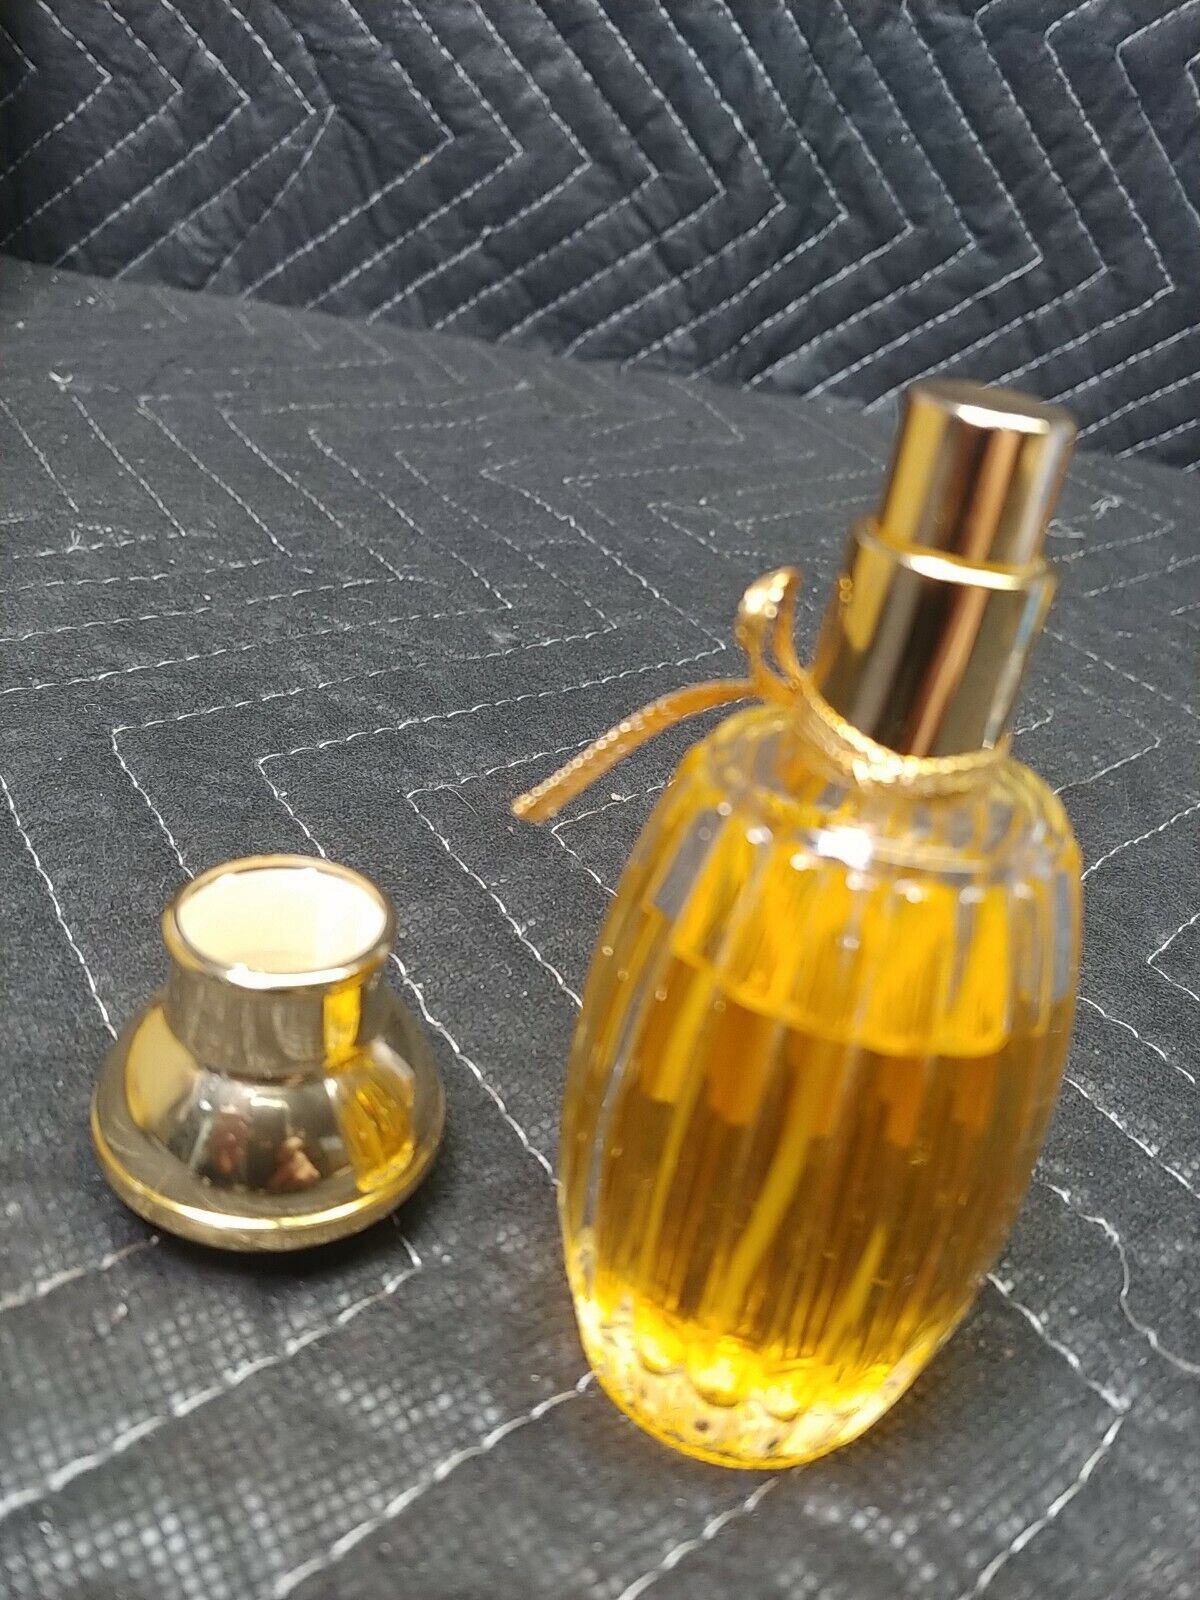 VINTAGE Extrait d' Annick, Annick Goutal Eau de Parfum Spray 1.66 oz / 50 ml